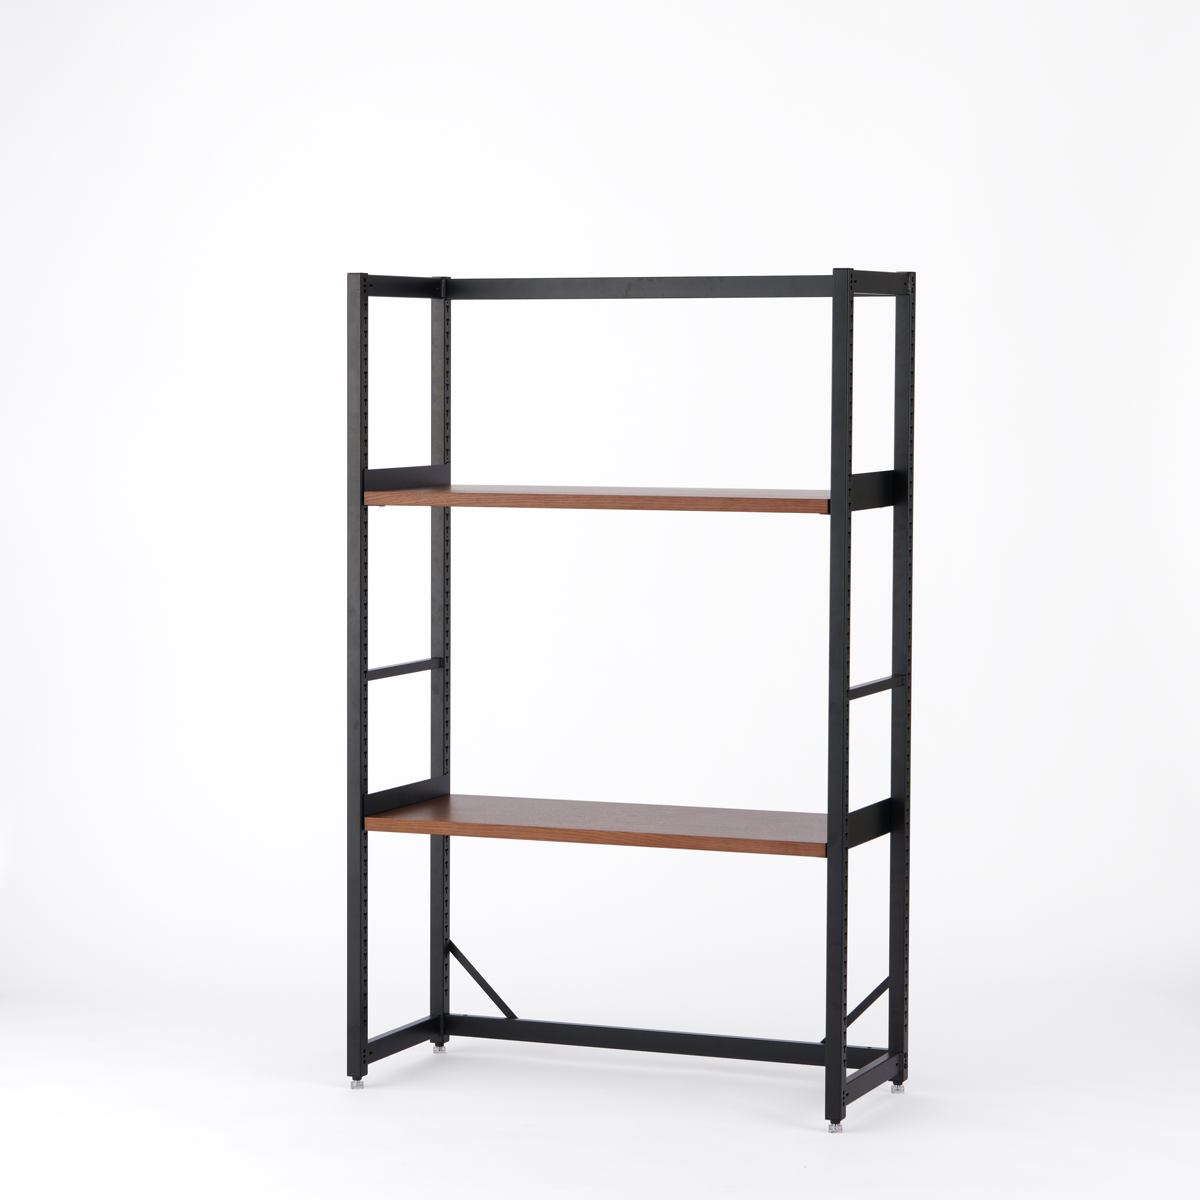 【テスト】 KUUM Shelf  Black - H1500 棚板2段 set